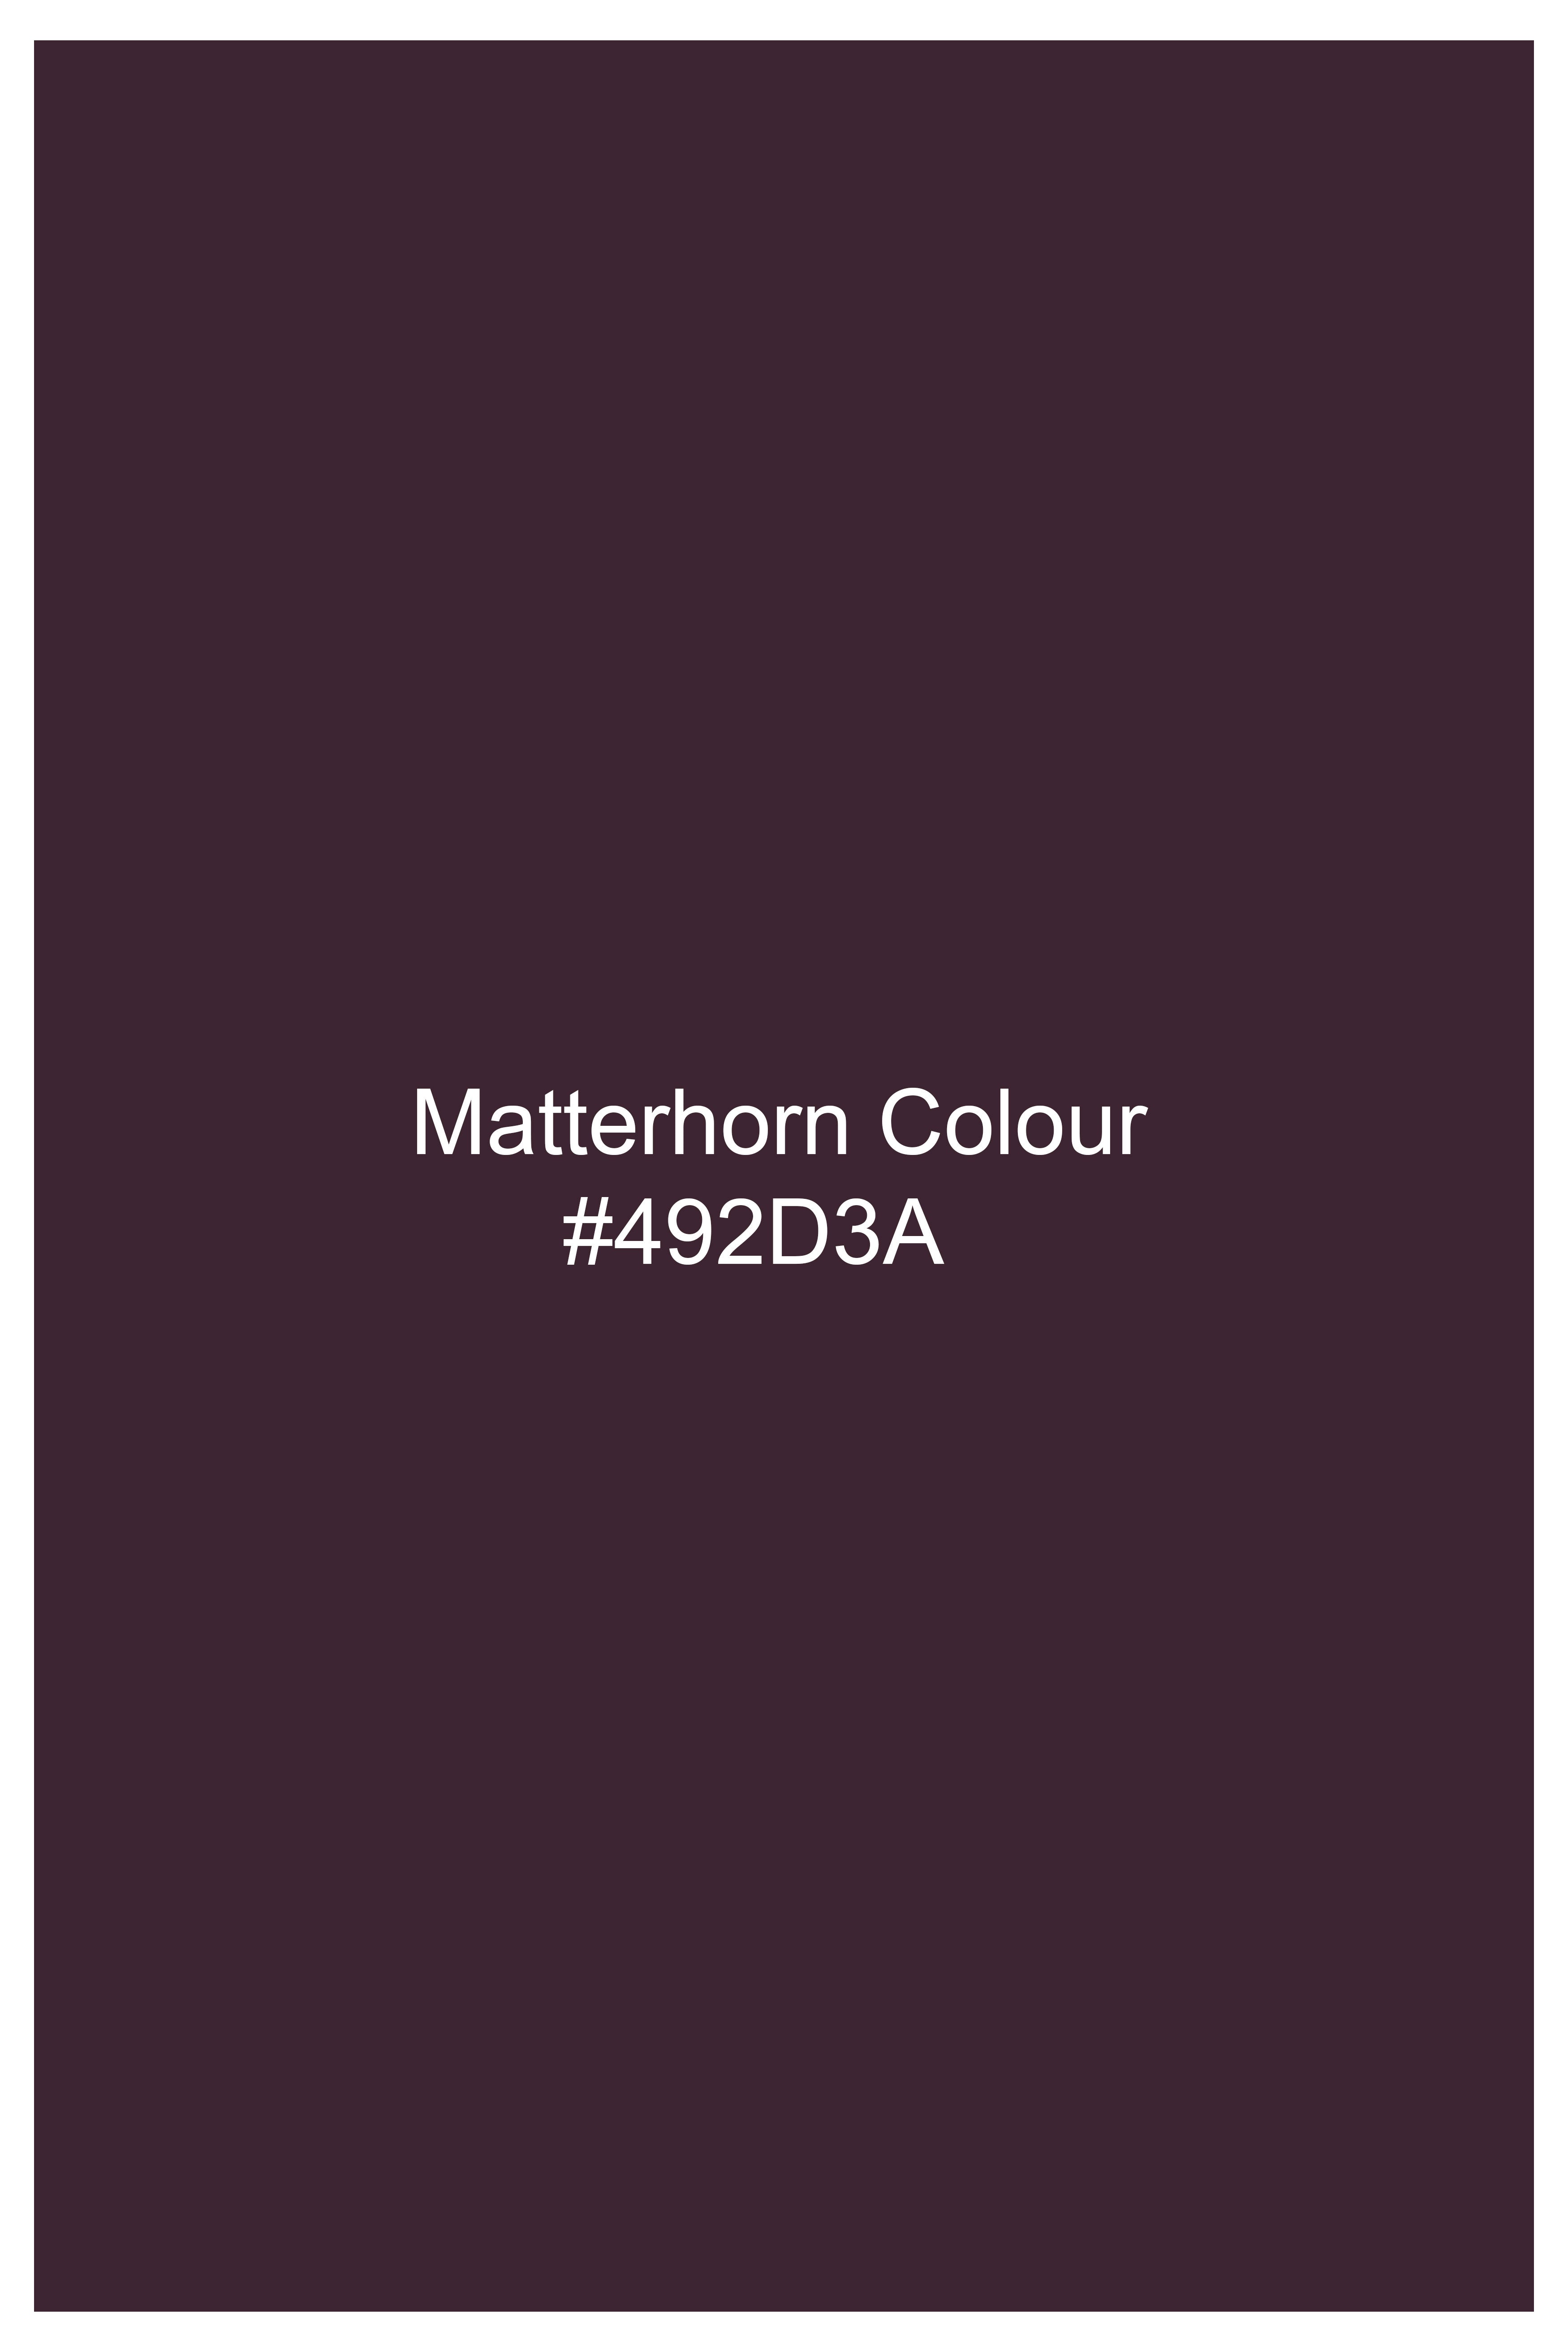 Matterhorn Maroon Wool Rich Waistcoat V2755-36, V2755-38, V2755-40, V2755-42, V2755-44, V2755-46, V2755-48, V2755-50, V2755-52, V2755-54, V2755-56, V2755-58, V2755-60